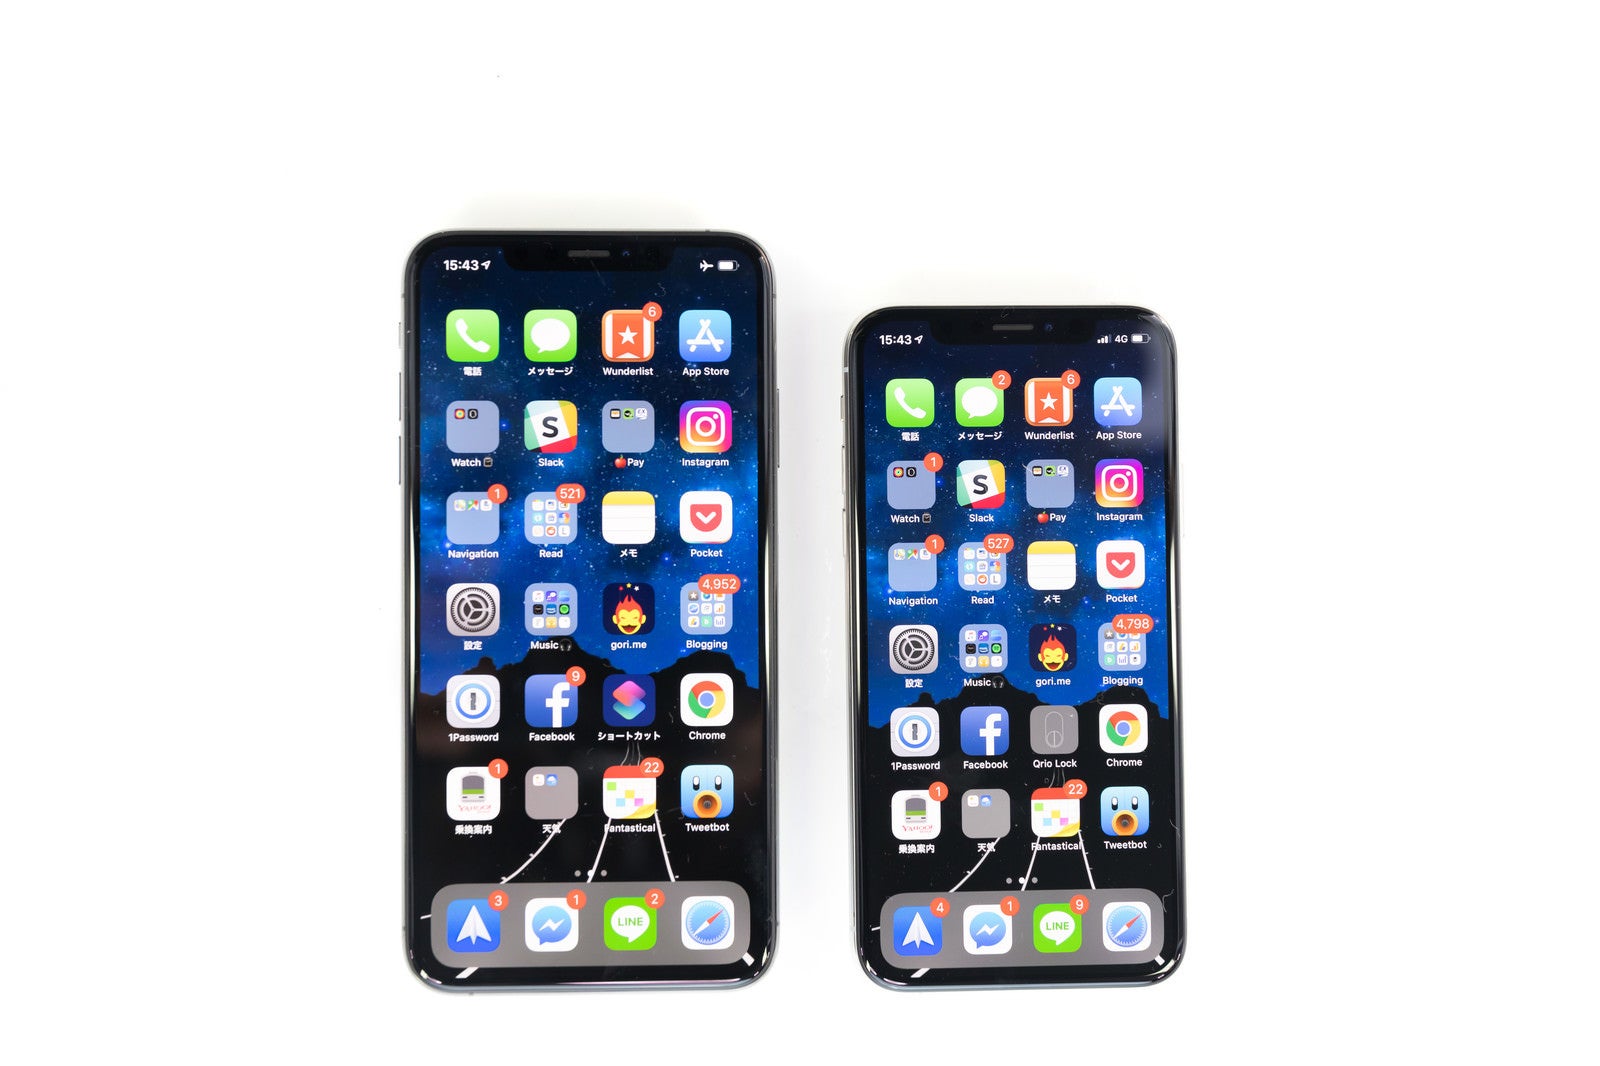 「iPhone XS と XS Max のホーム画面」の写真